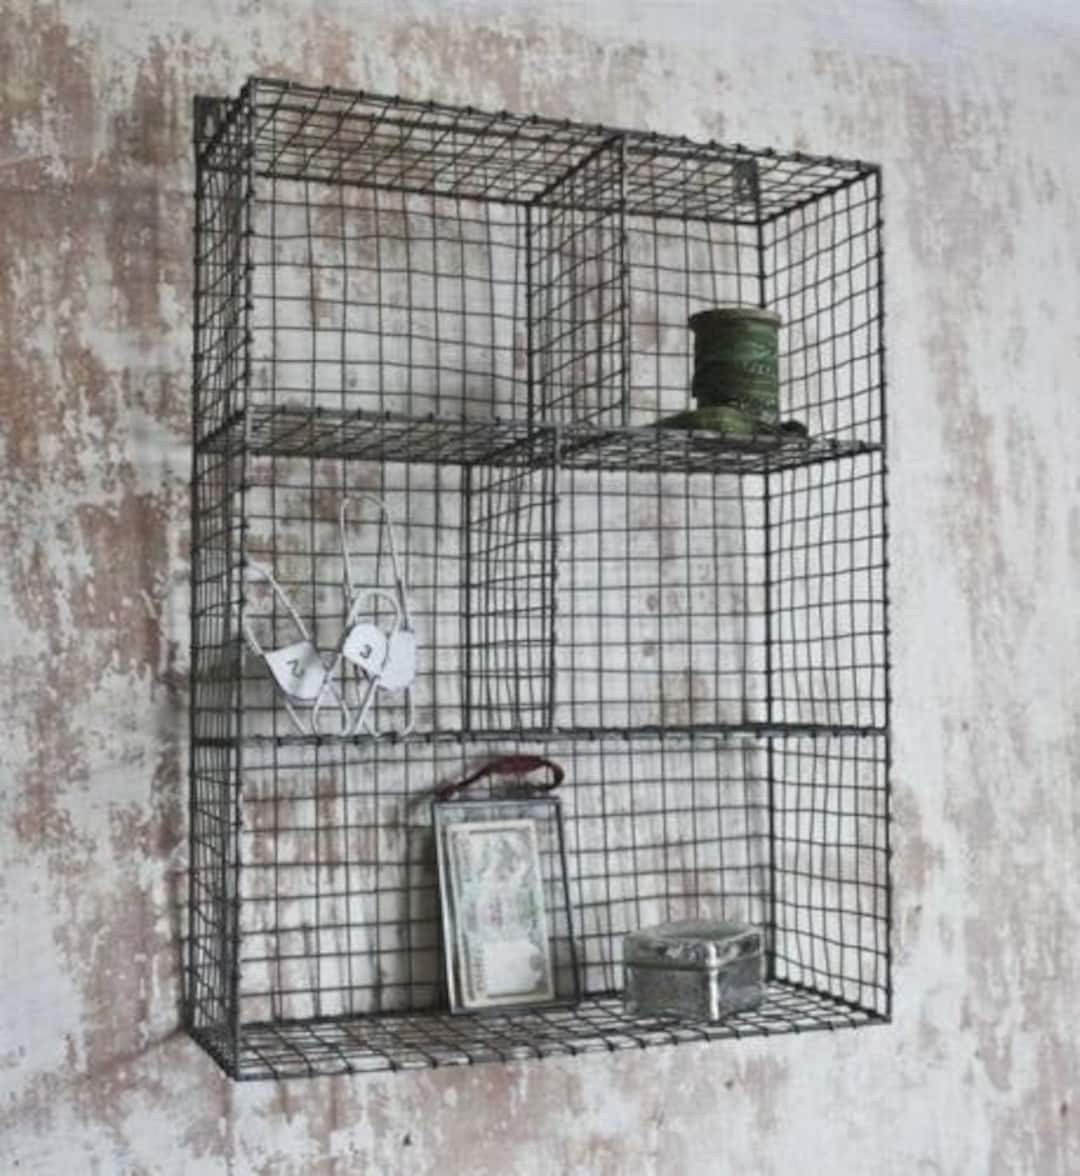 Black Chicken Wire Wall Hanging Organizer Shelf, 3-Tiers